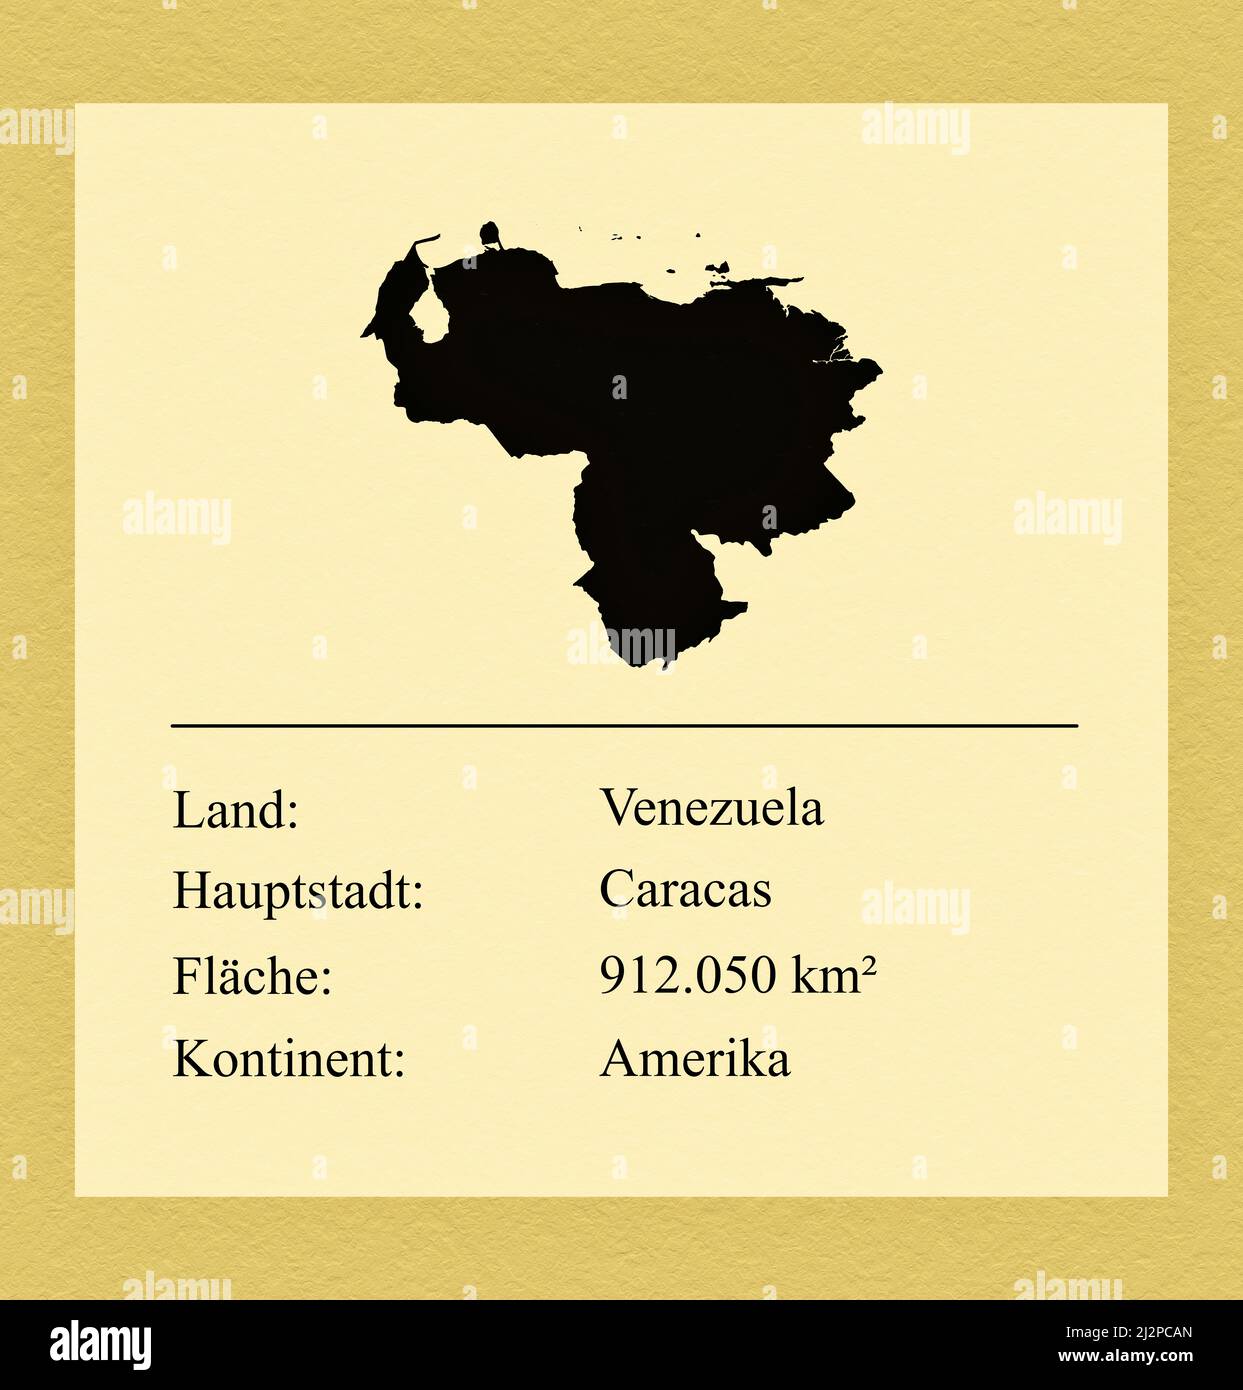 Umrisse des Landes Venezuela, darunter ein kleiner Steckbrief mit Ländernamen, Hauptstadt, Fläche und Kontinent Foto Stock